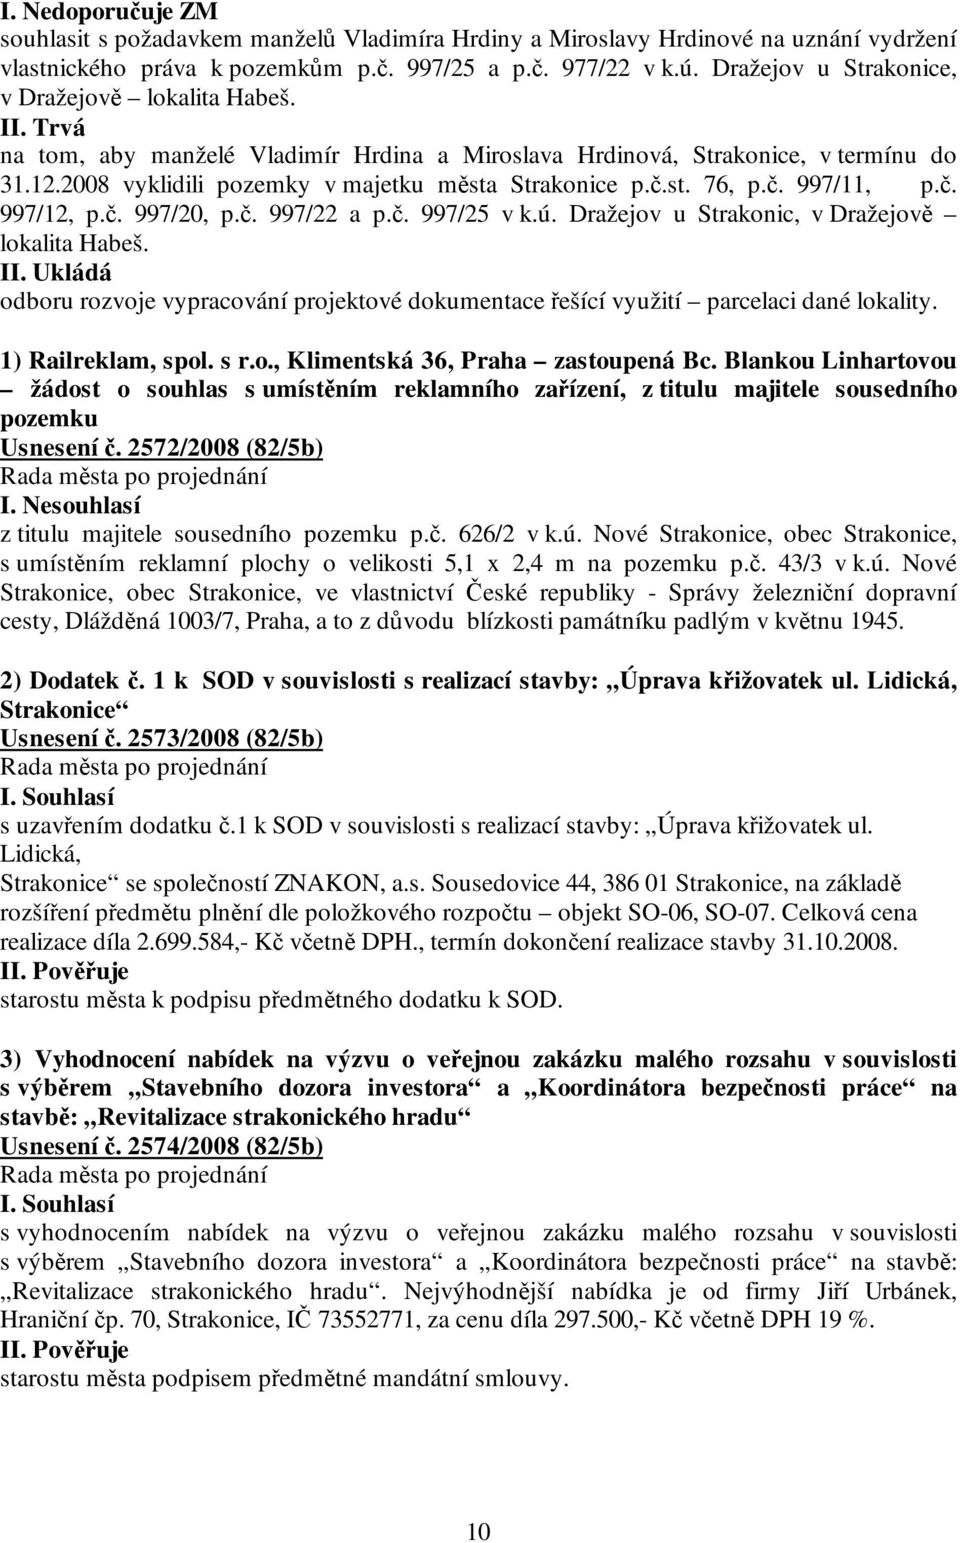 2008 vyklidili pozemky v majetku města Strakonice p.č.st. 76, p.č. 997/11, p.č. 997/12, p.č. 997/20, p.č. 997/22 a p.č. 997/25 v k.ú. Dražejov u Strakonic, v Dražejově lokalita Habeš.